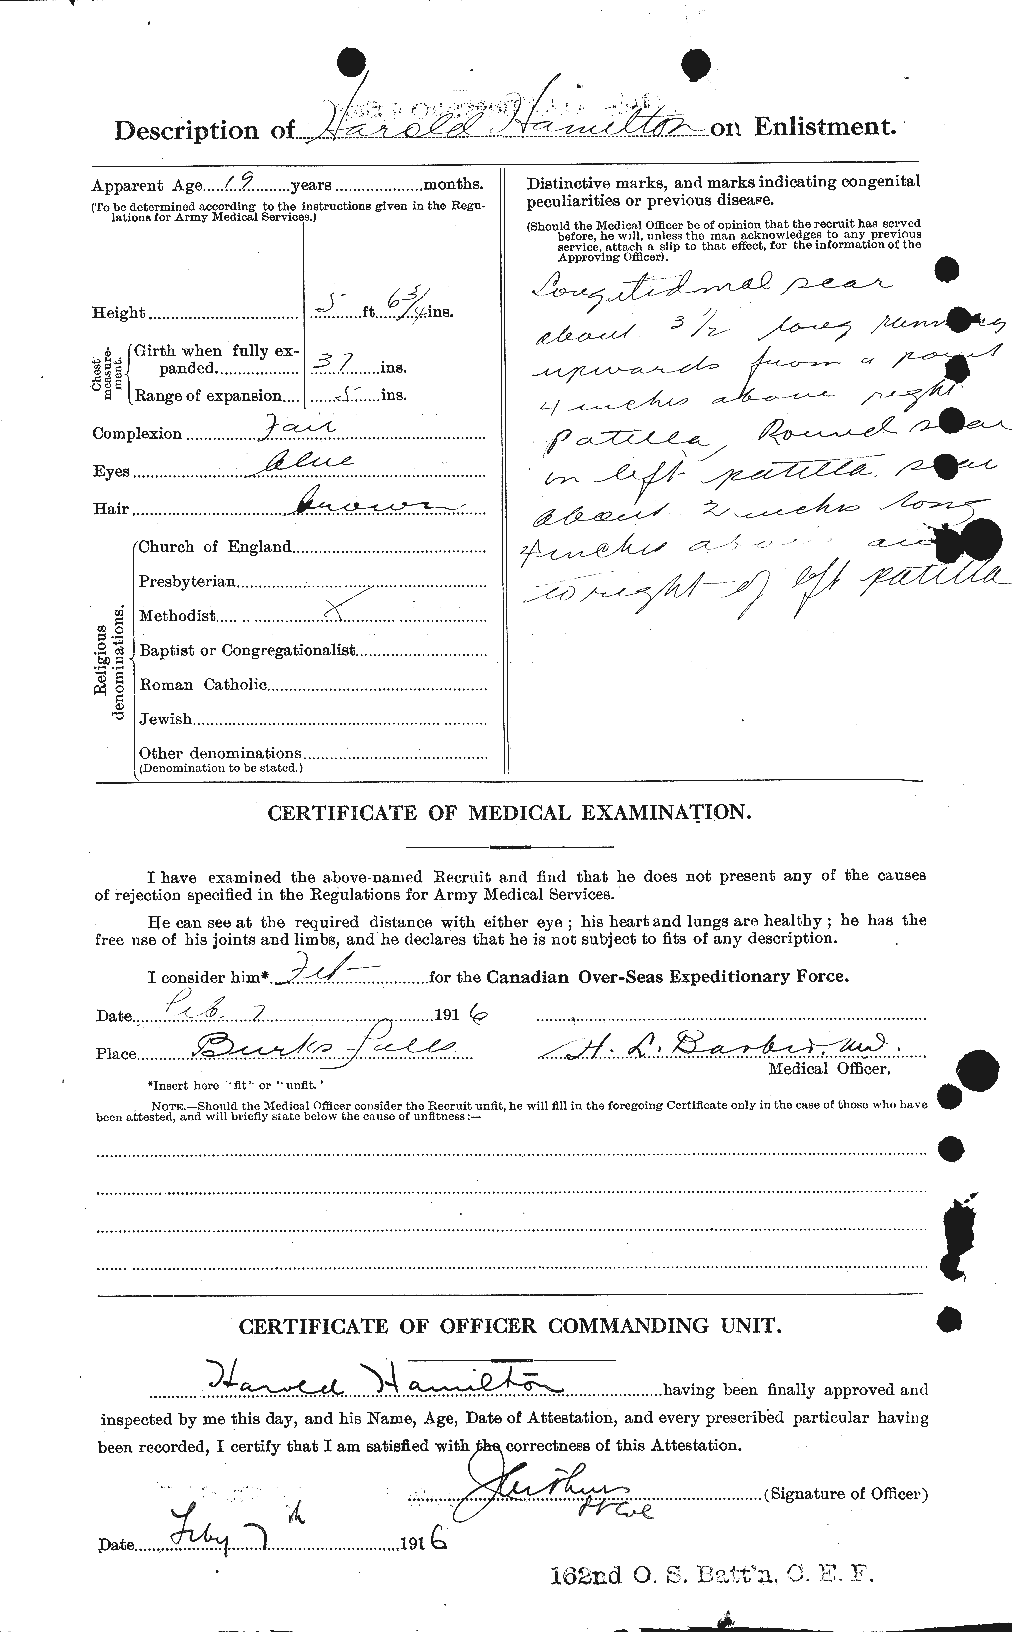 Dossiers du Personnel de la Première Guerre mondiale - CEC 372493b